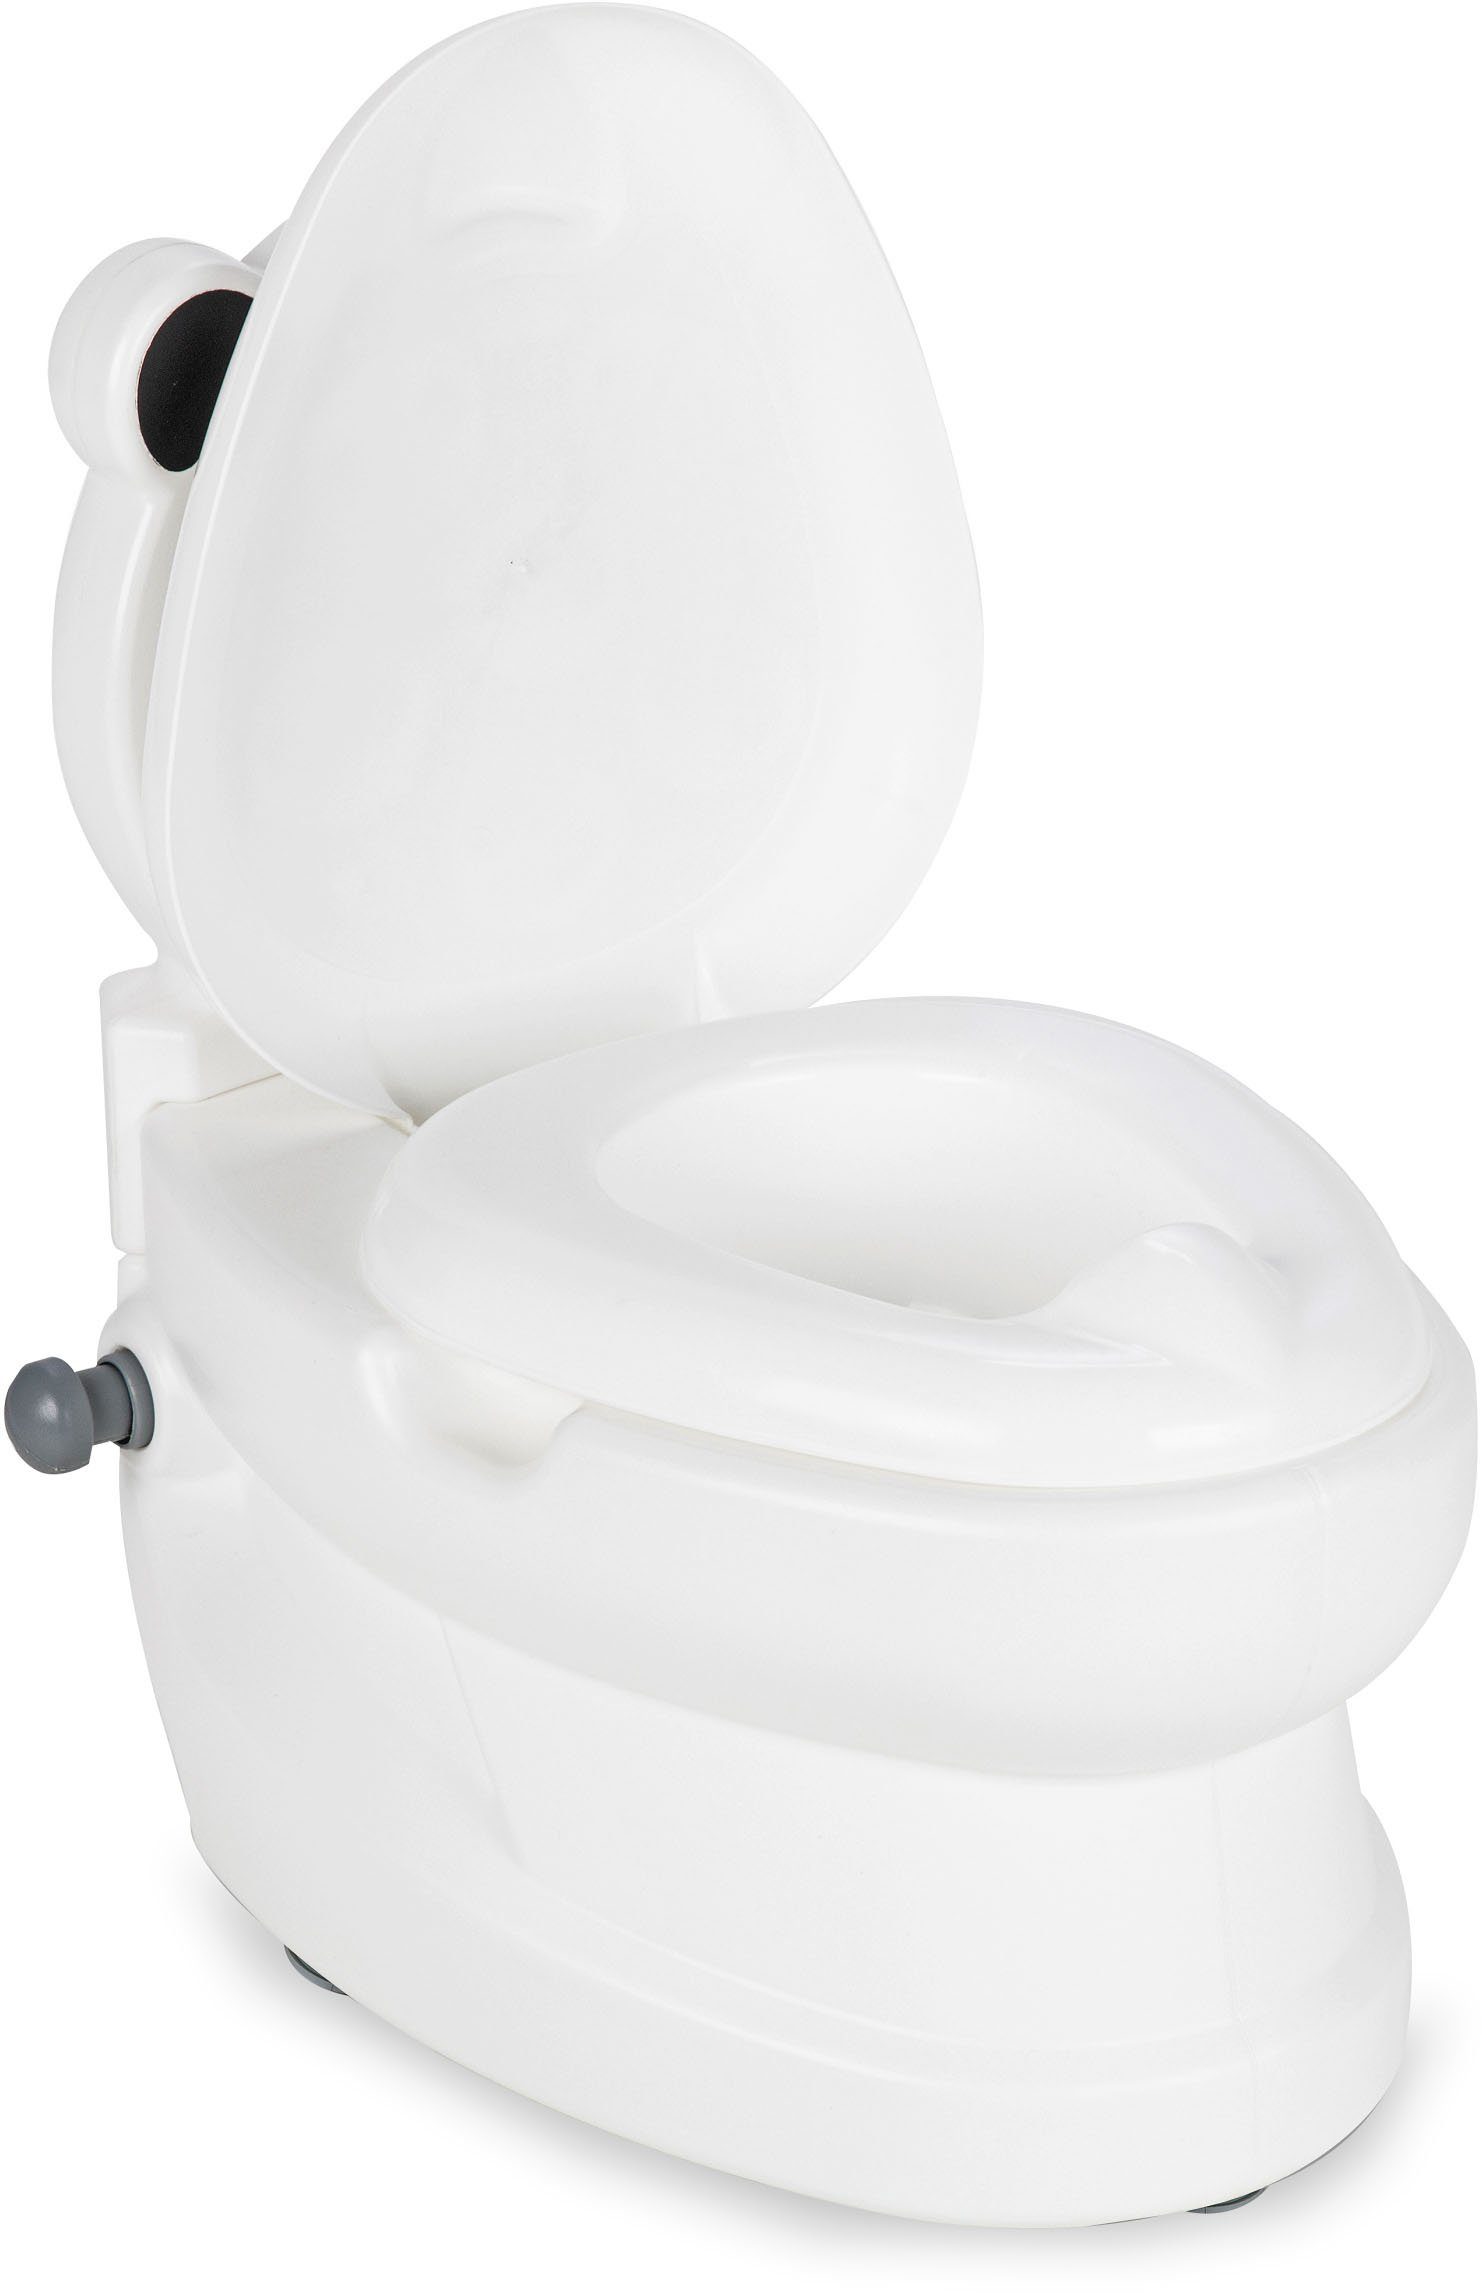 Jamara Toilettentrainer Meine kleine Toilette, mit und Panda, Toilettenpapierhalter Spülsound